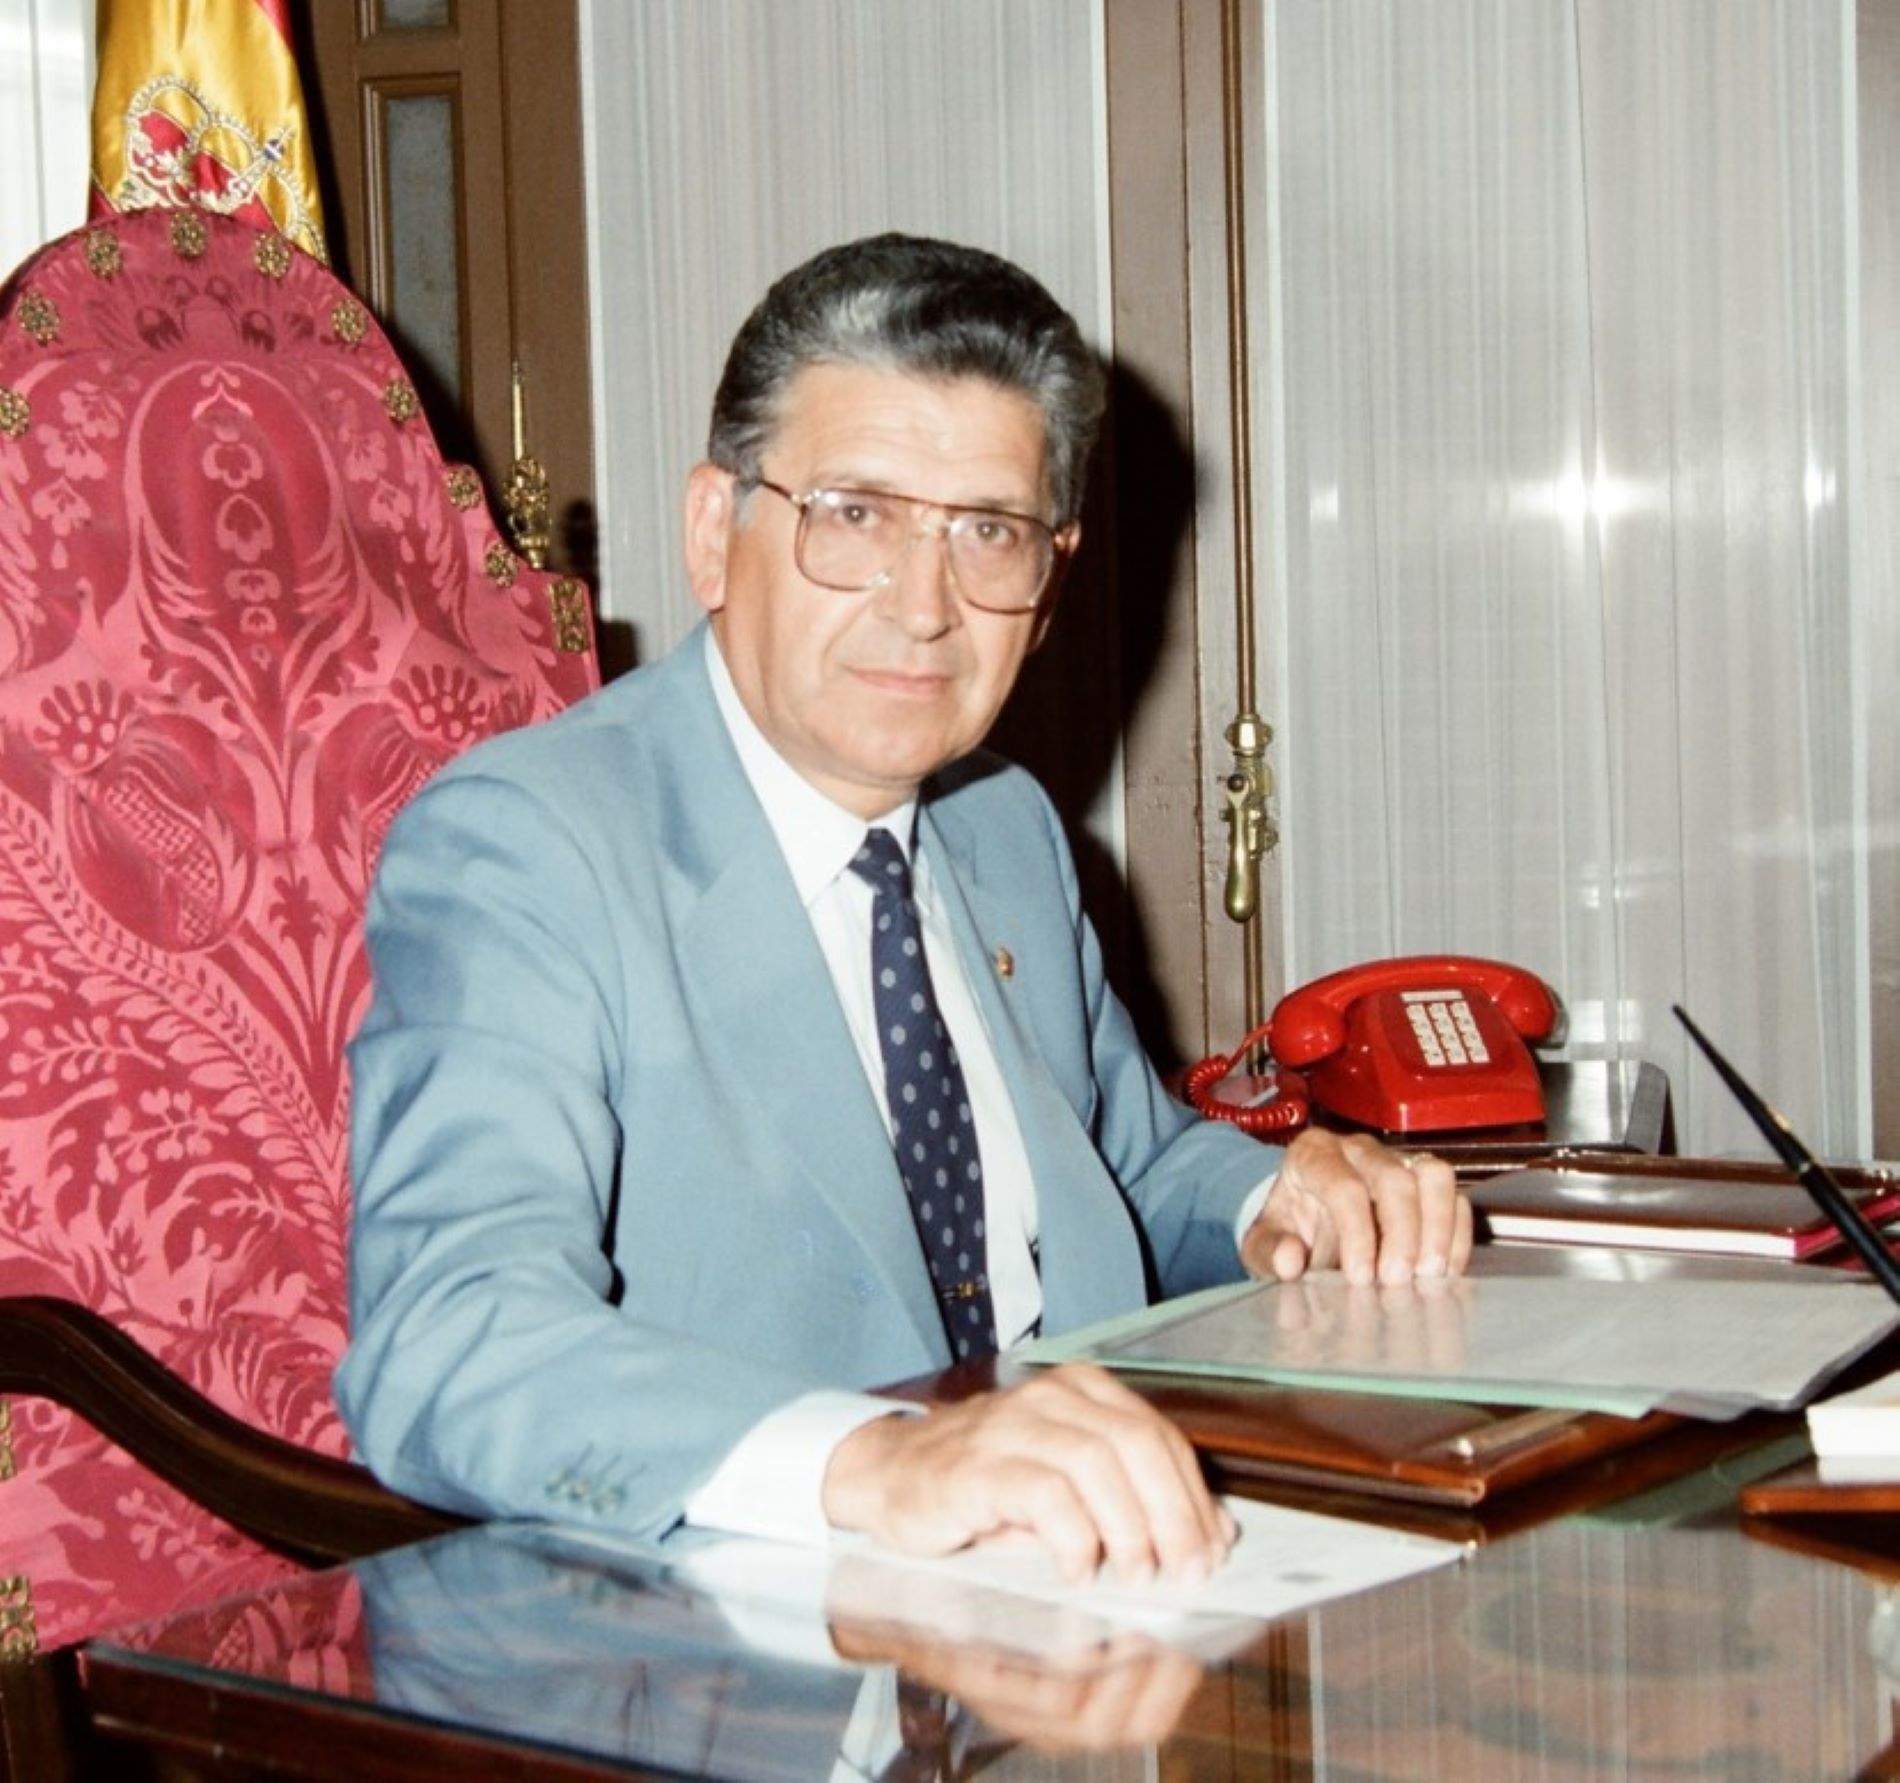 Mor Jeroni Albertí, expresident del Parlament balear i fundador d’Unió Mallorquina